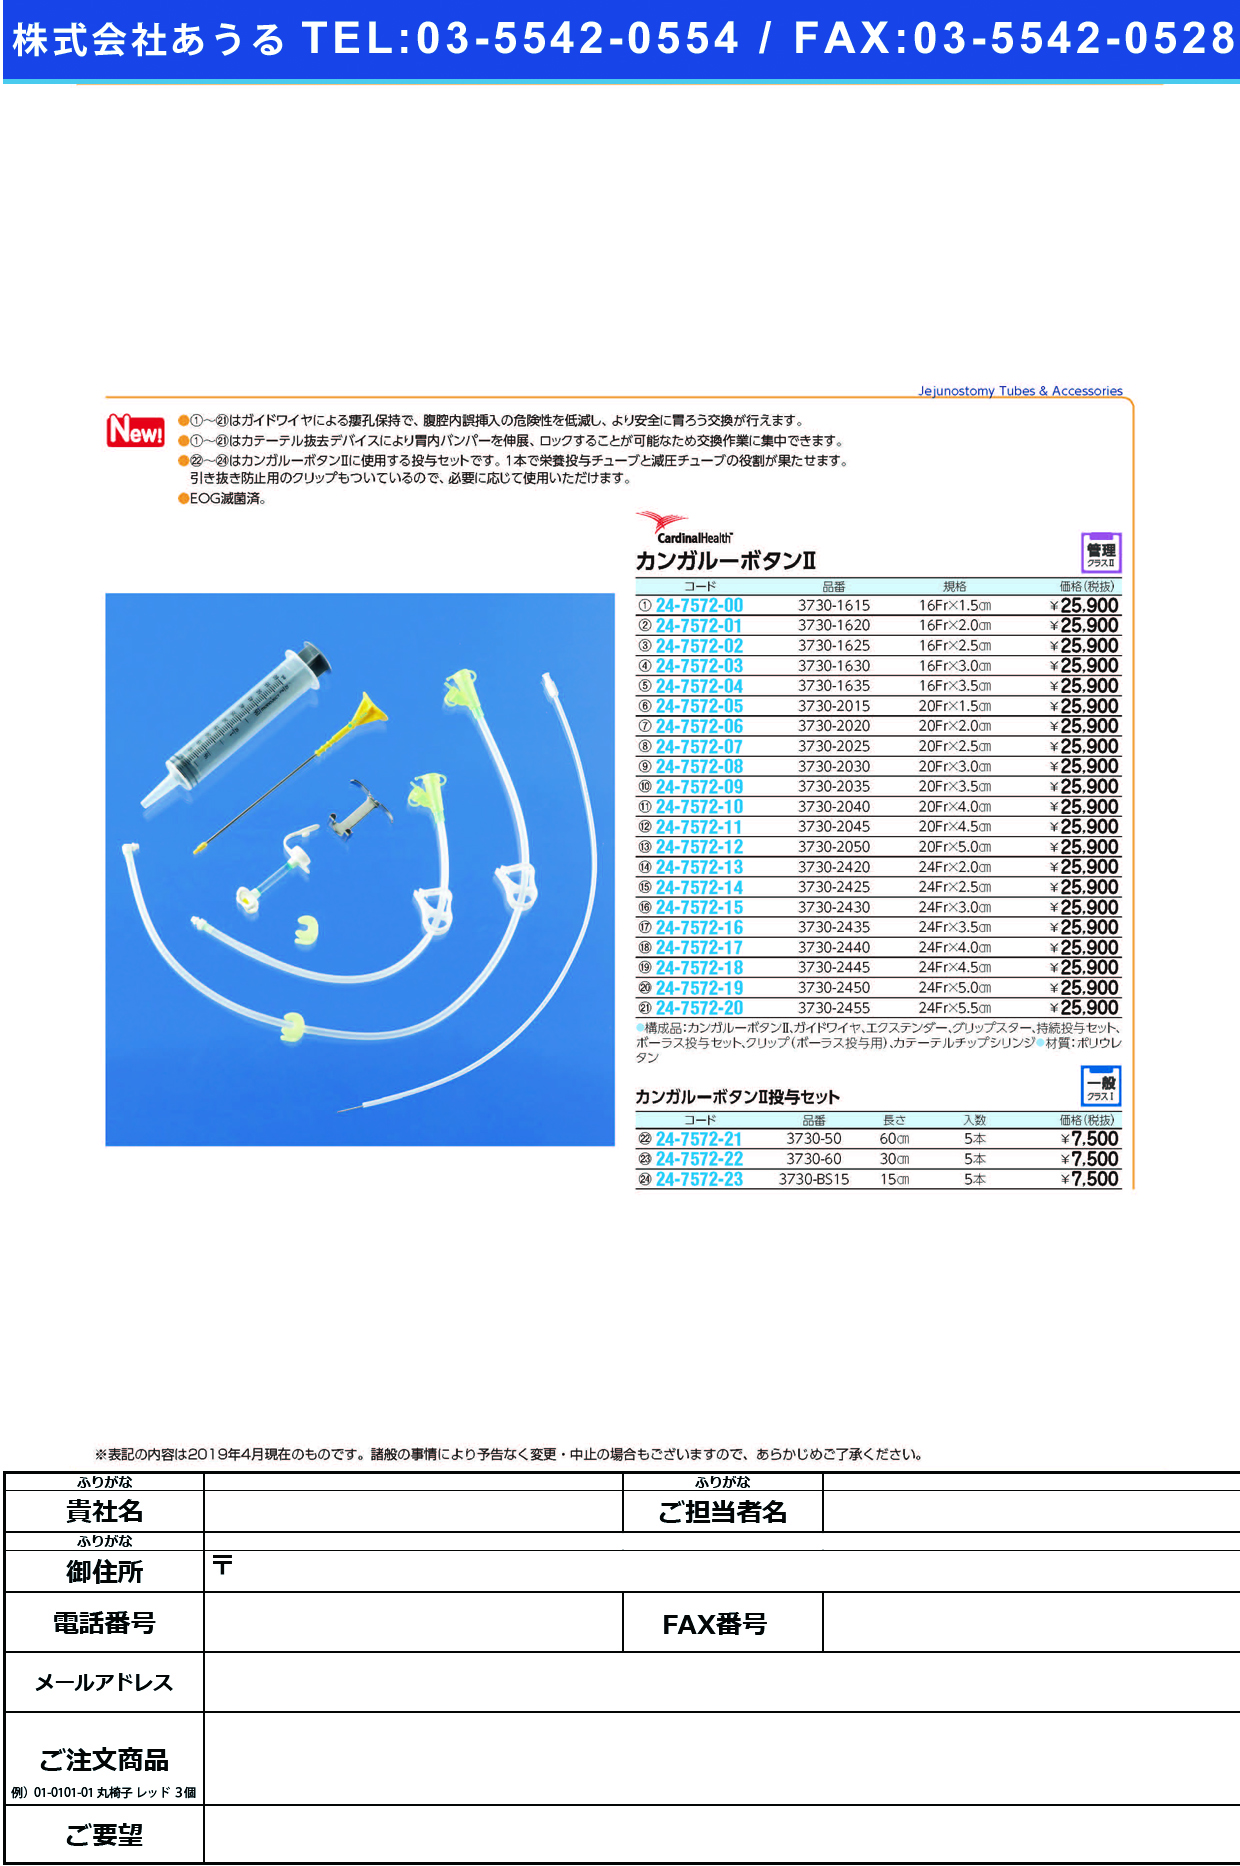 (24-7572-07)カンガルーボタンⅡ3730-2025(20FR2.5CM) ｶﾝｶﾞﾙｰﾎﾞﾀﾝ2(日本コヴィディエン)【1個単位】【2019年カタログ商品】